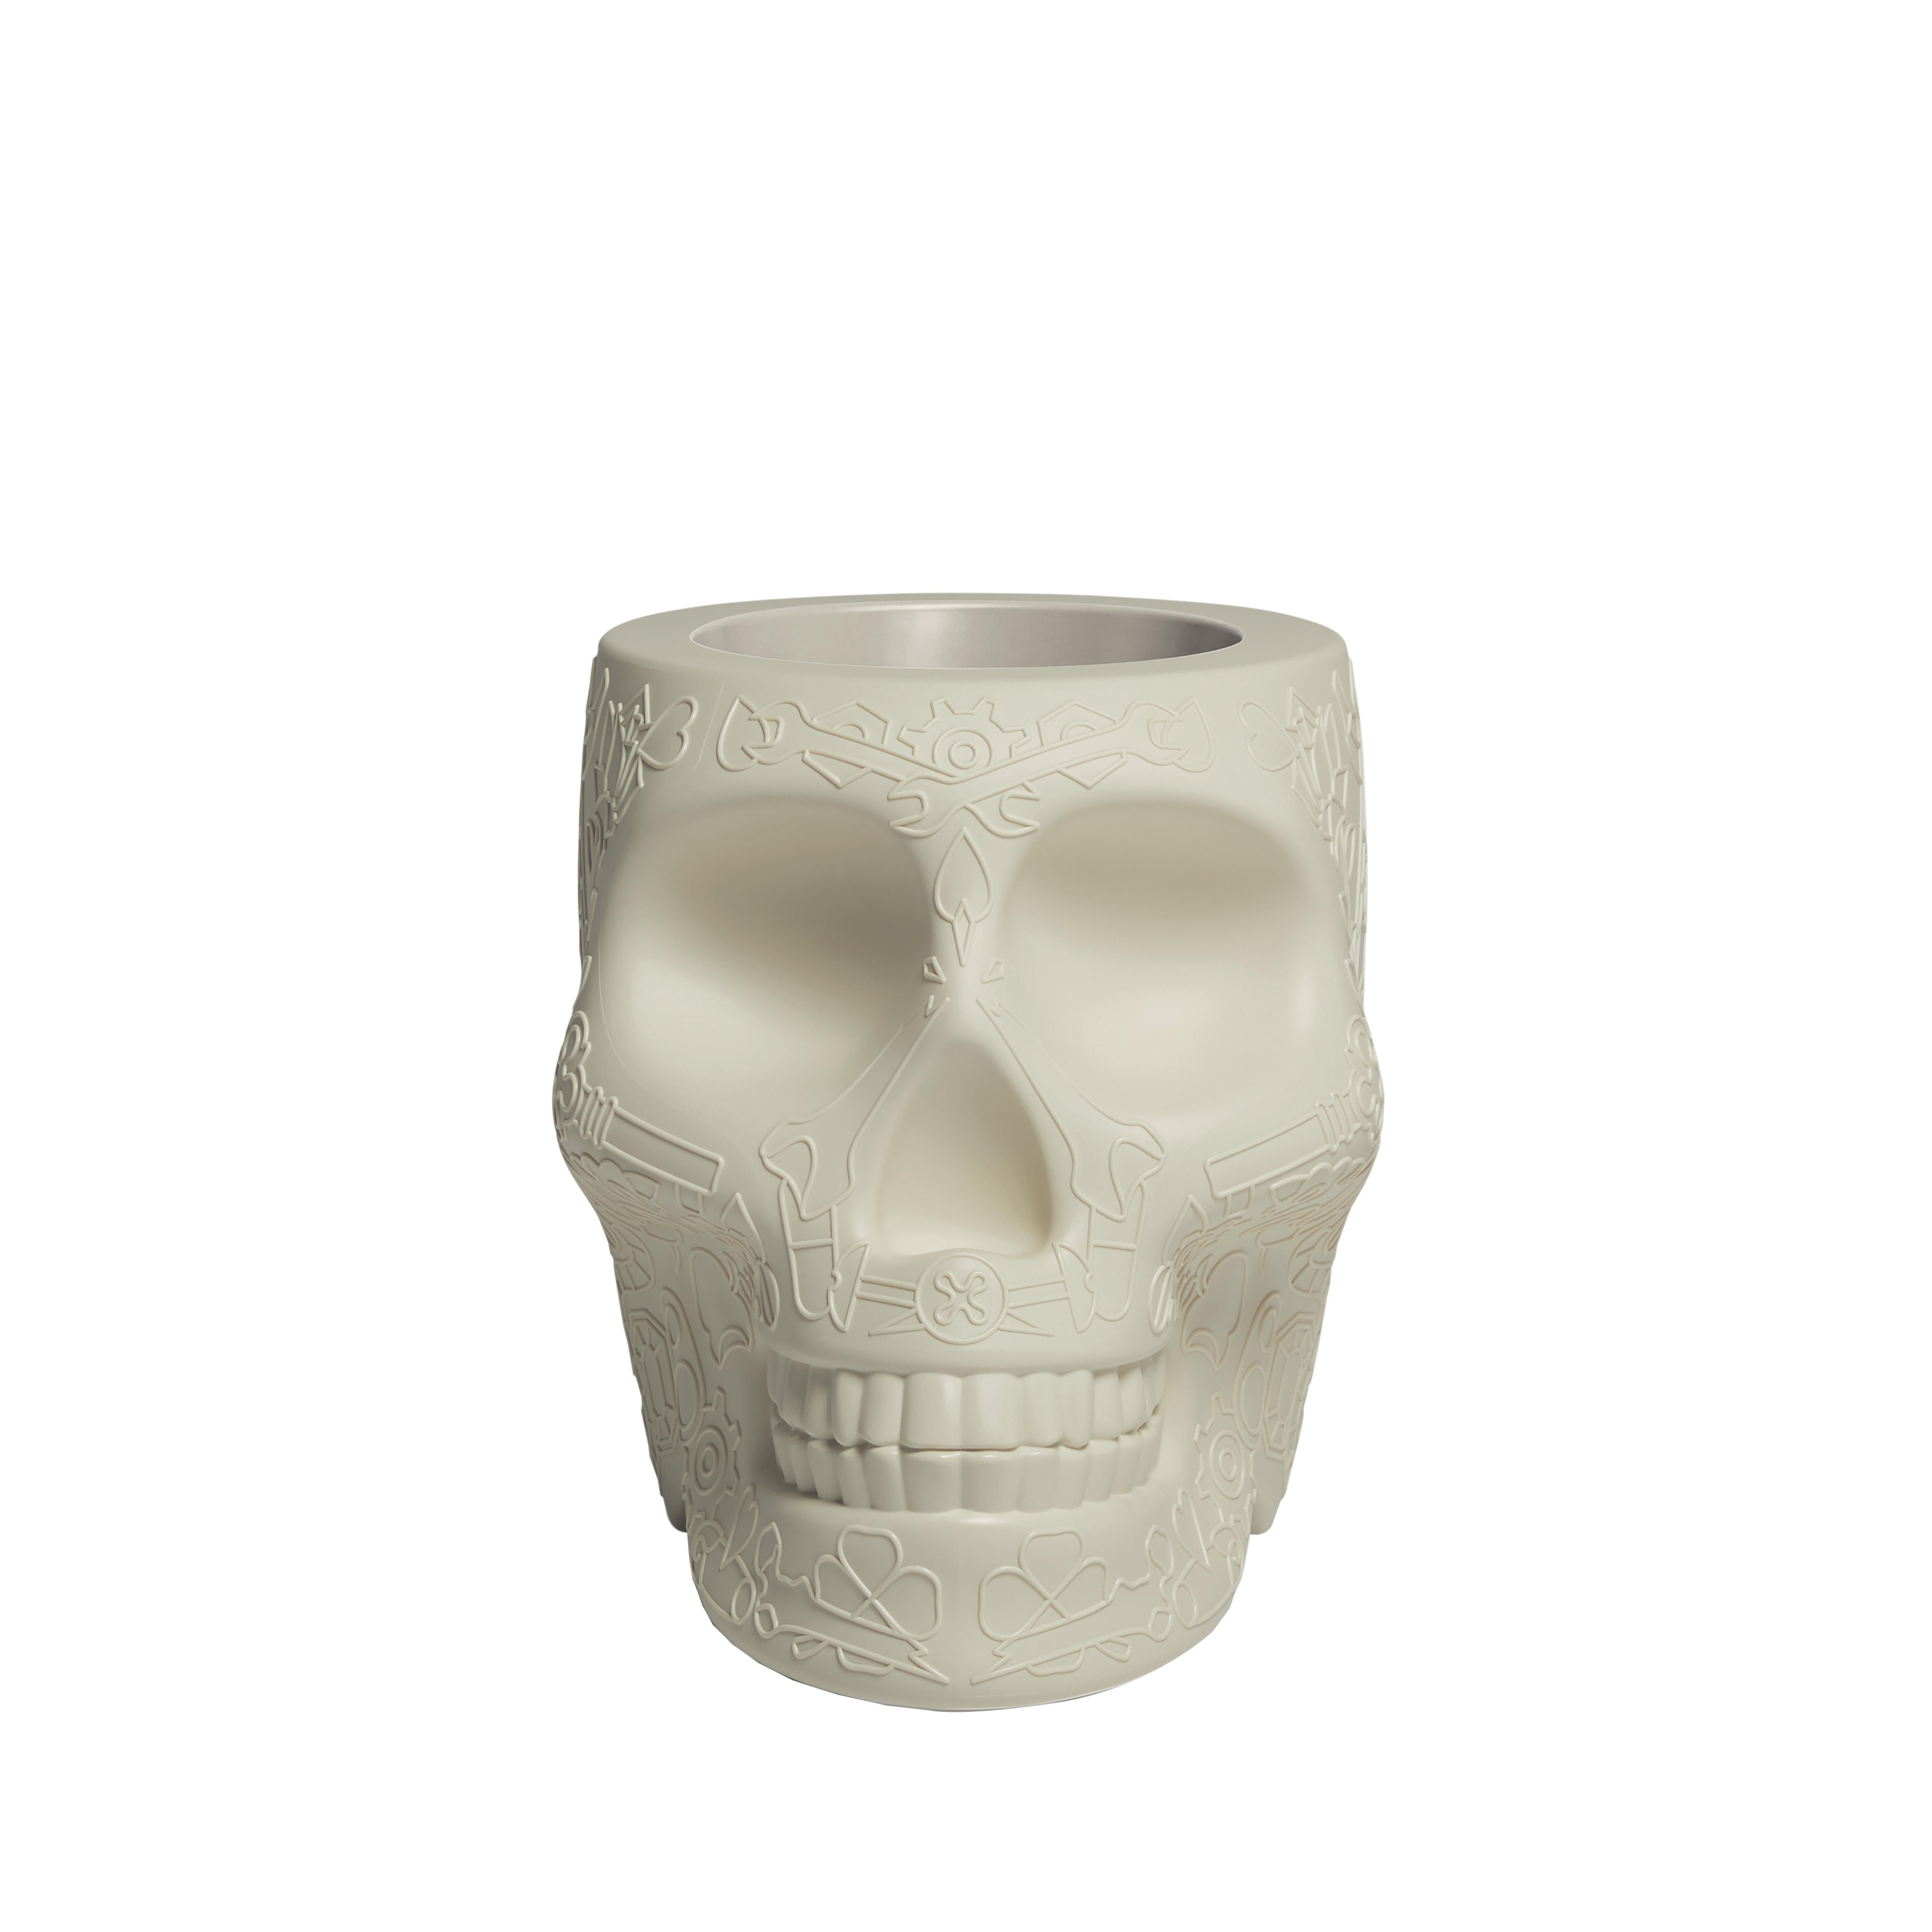 En vente : White (Ivory) Jardinière ou seau à champagne moderne en plastique en forme de crâne en terre cuite par Studio Job